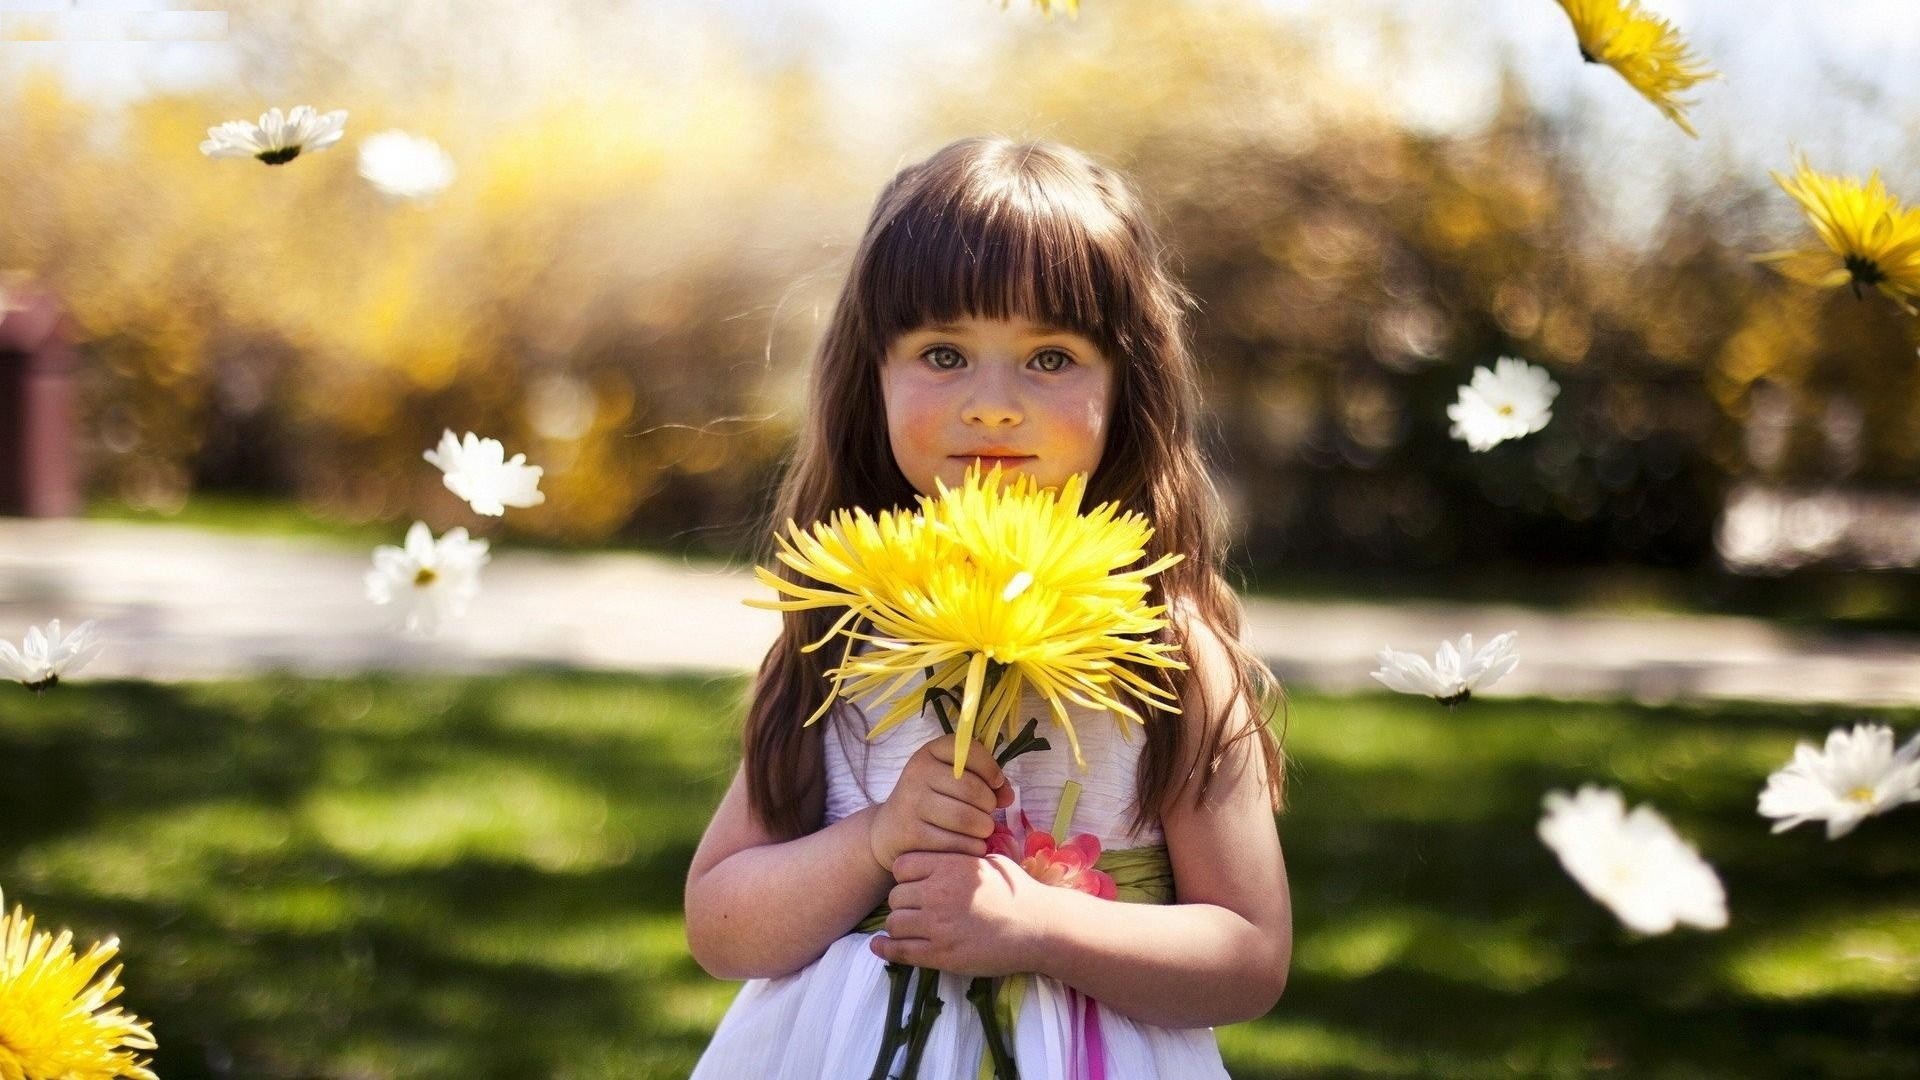 http://www.jkahir.com/wp-content/uploads/2017/10/Lovely-Beauty-Baby-Girl-Having-Yellow-Sunflower.jpg